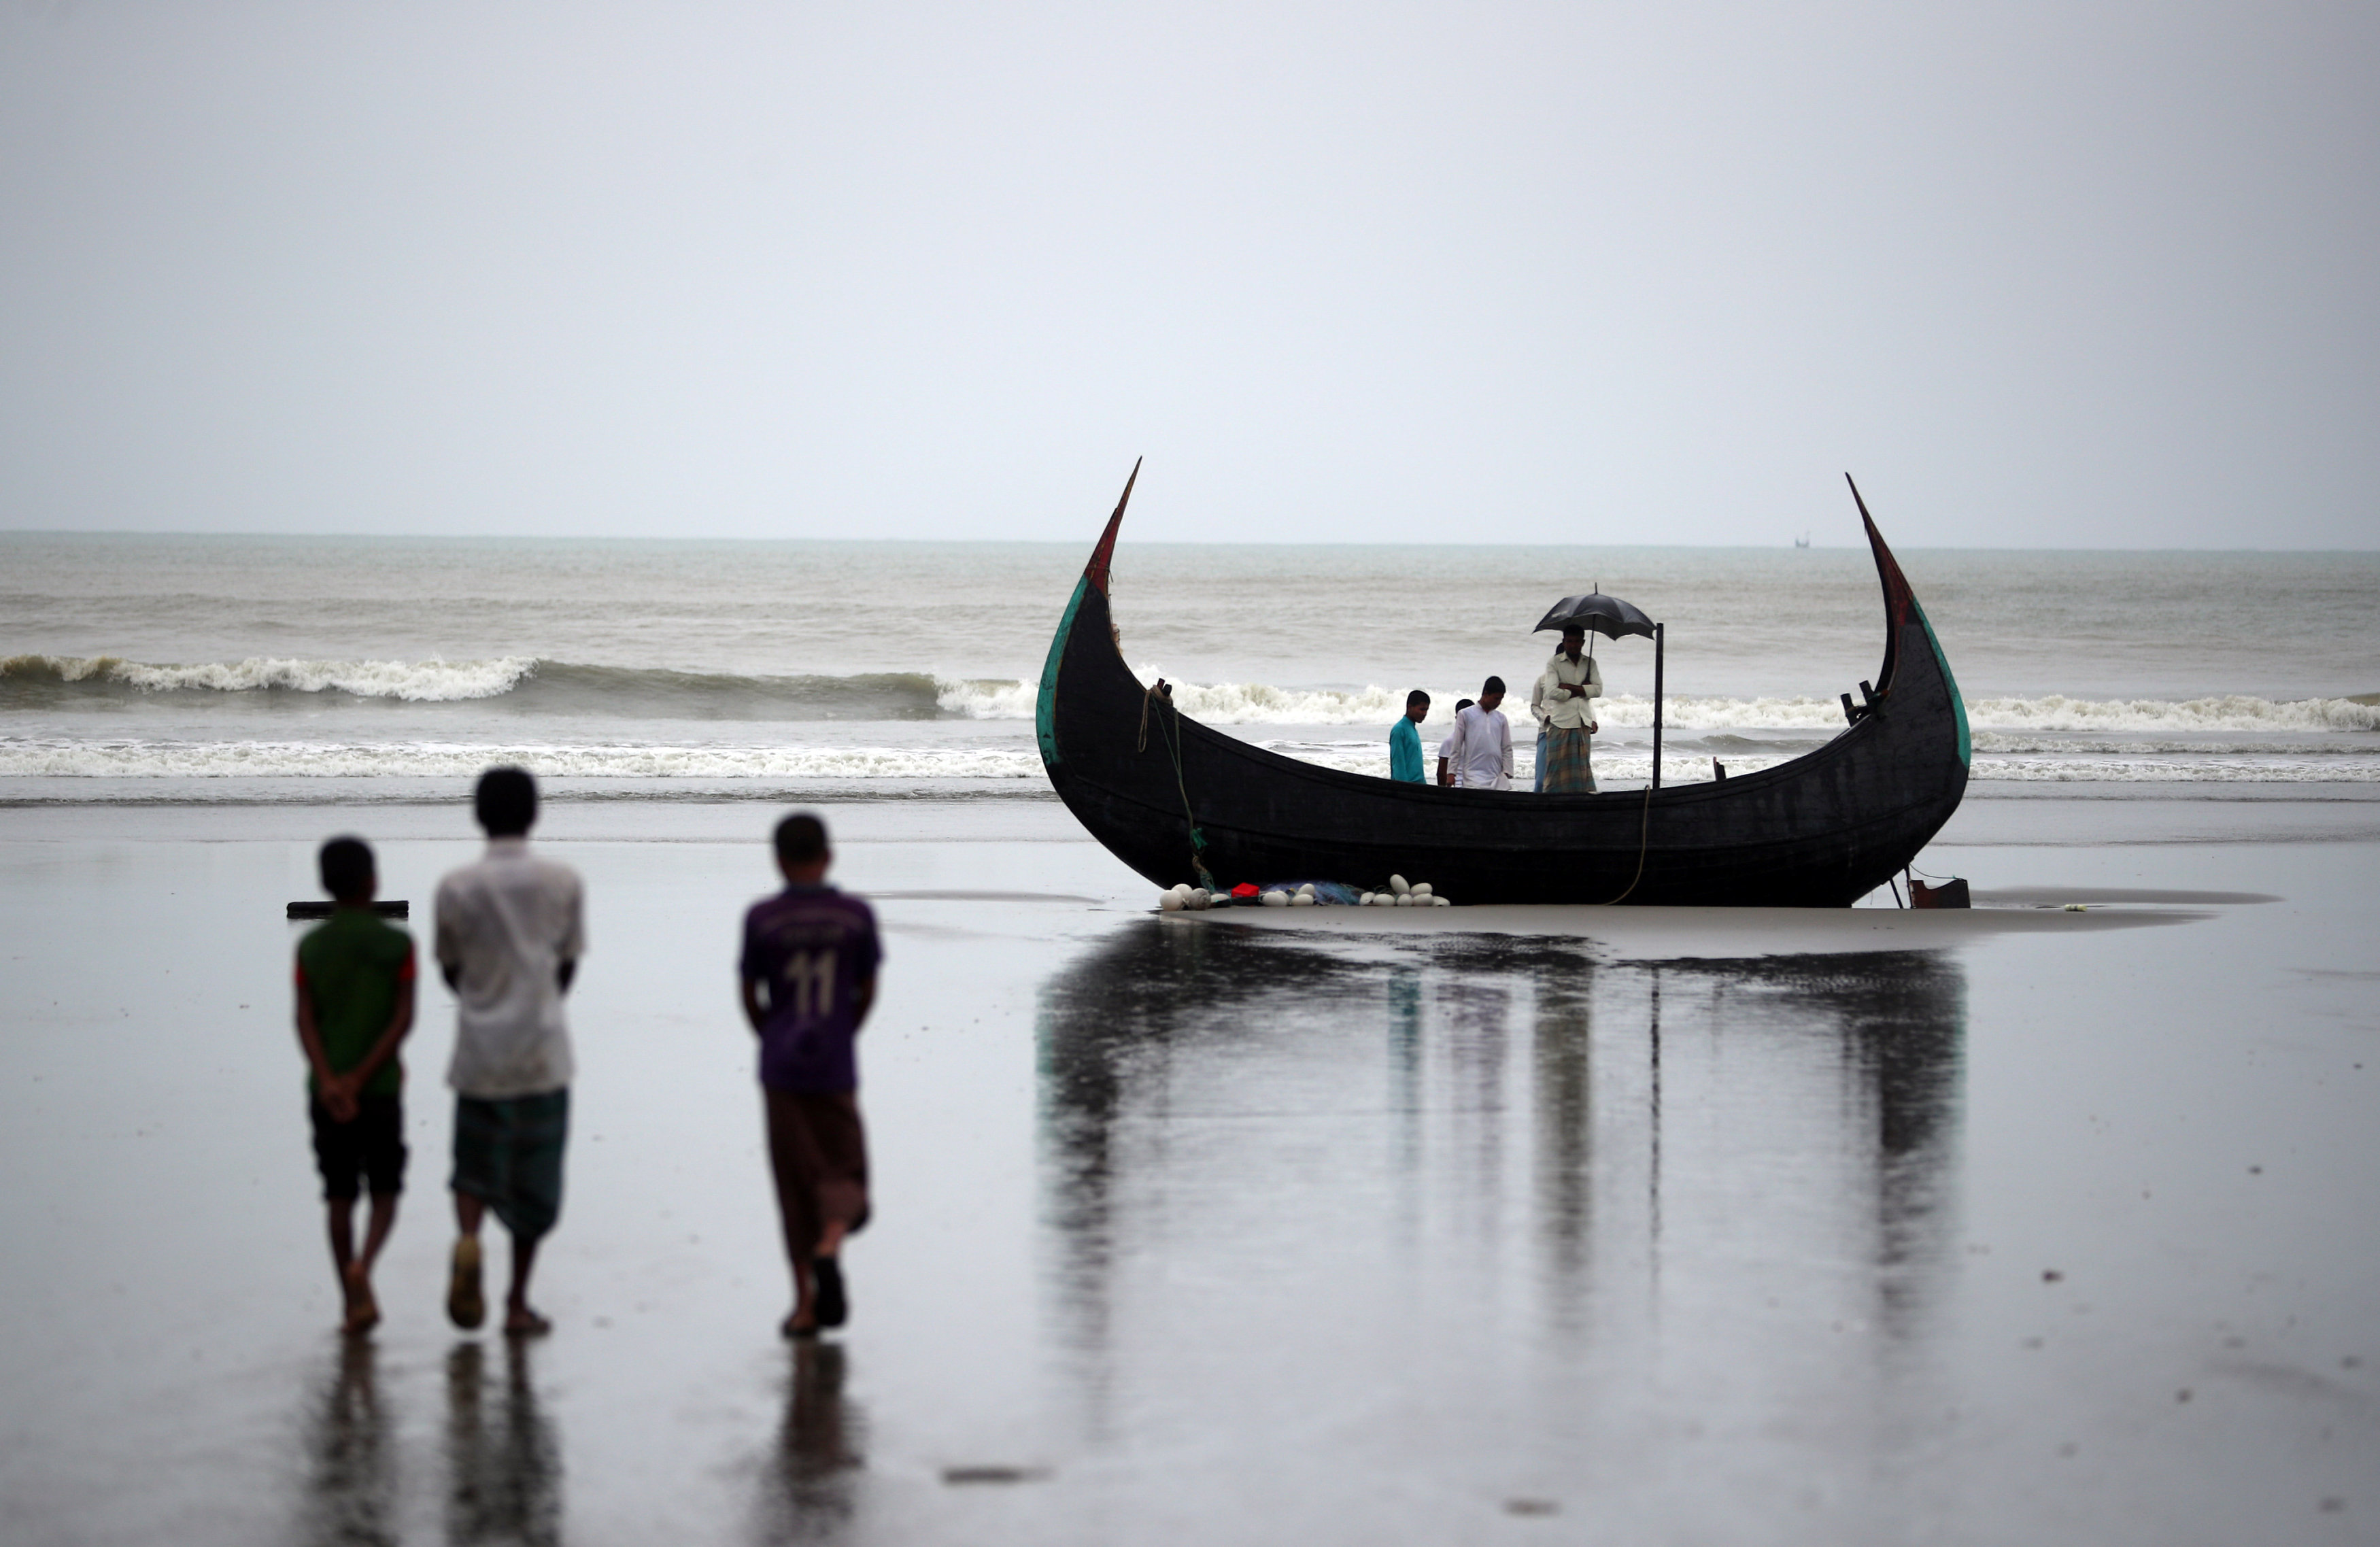 غرق مركب على متنه العشرات من الروهينجا قرب بنجلاديش